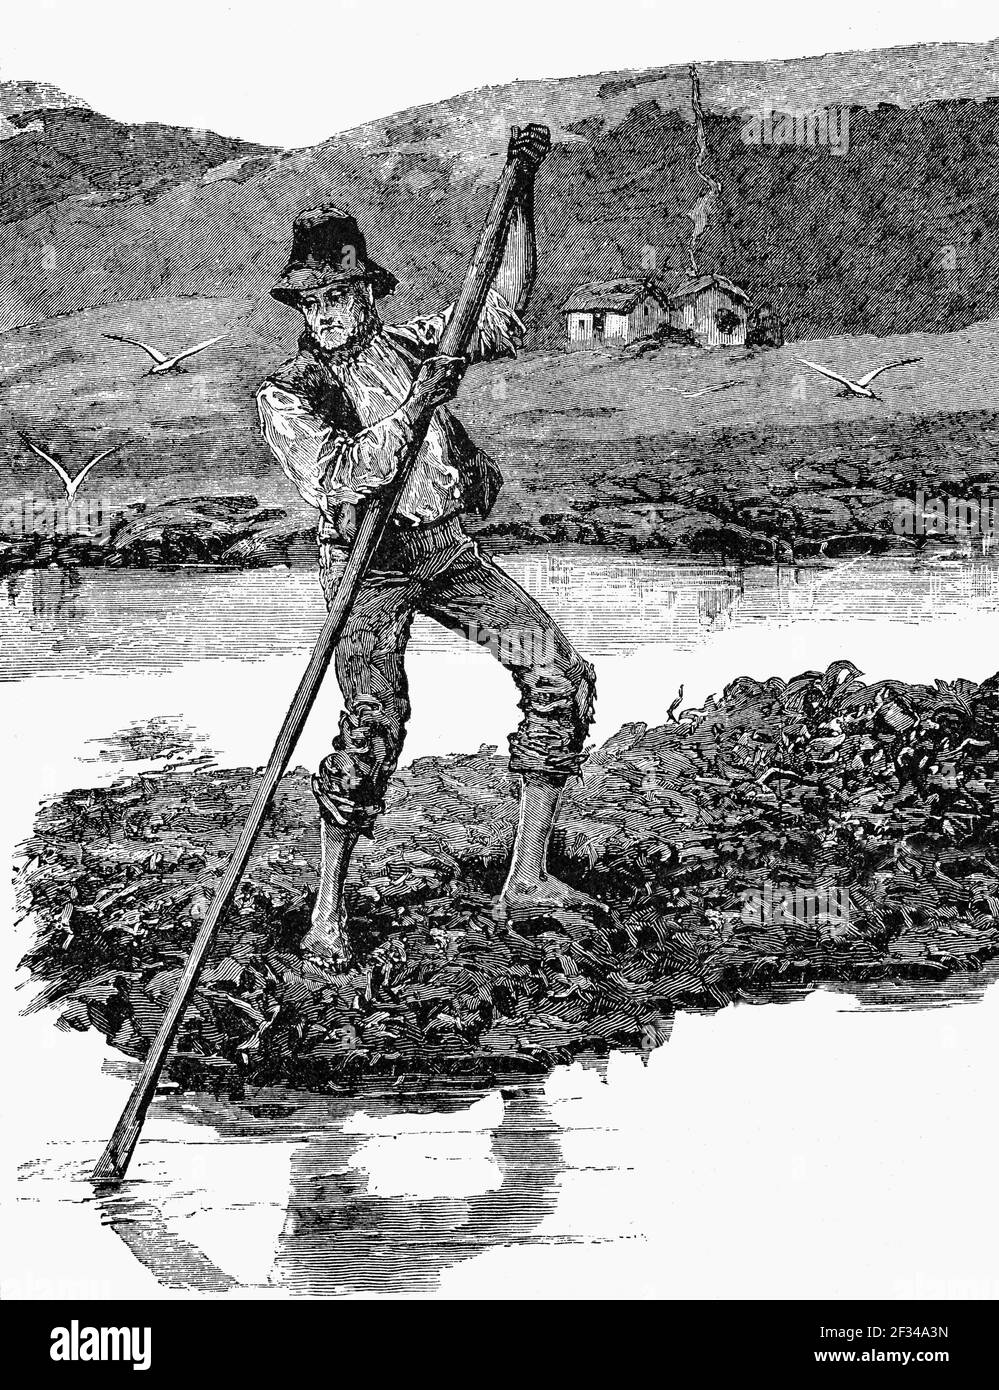 Eine Karikatur aus dem 19th. Jahrhundert, in der ein Bauer ein Floß von verworrenen Algen manövriert und als Fertiser verwendet. Vor der Küste von Connemara, County Galway, Irland Stockfoto